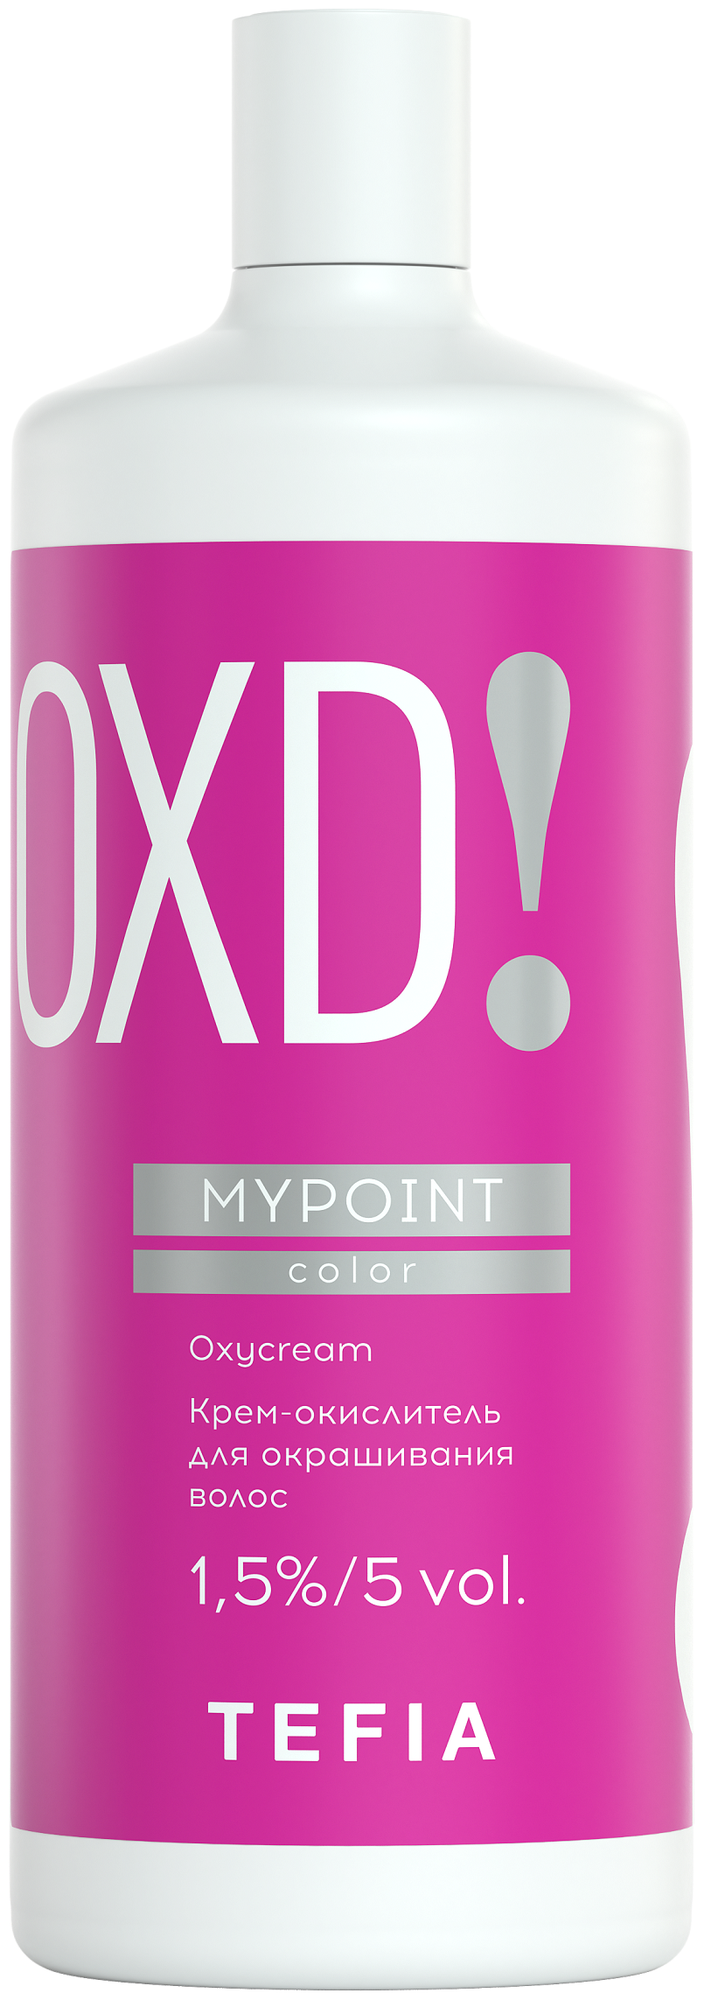 Tefia Крем-окислитель Mypoint OXD, 1.5%, 900 мл